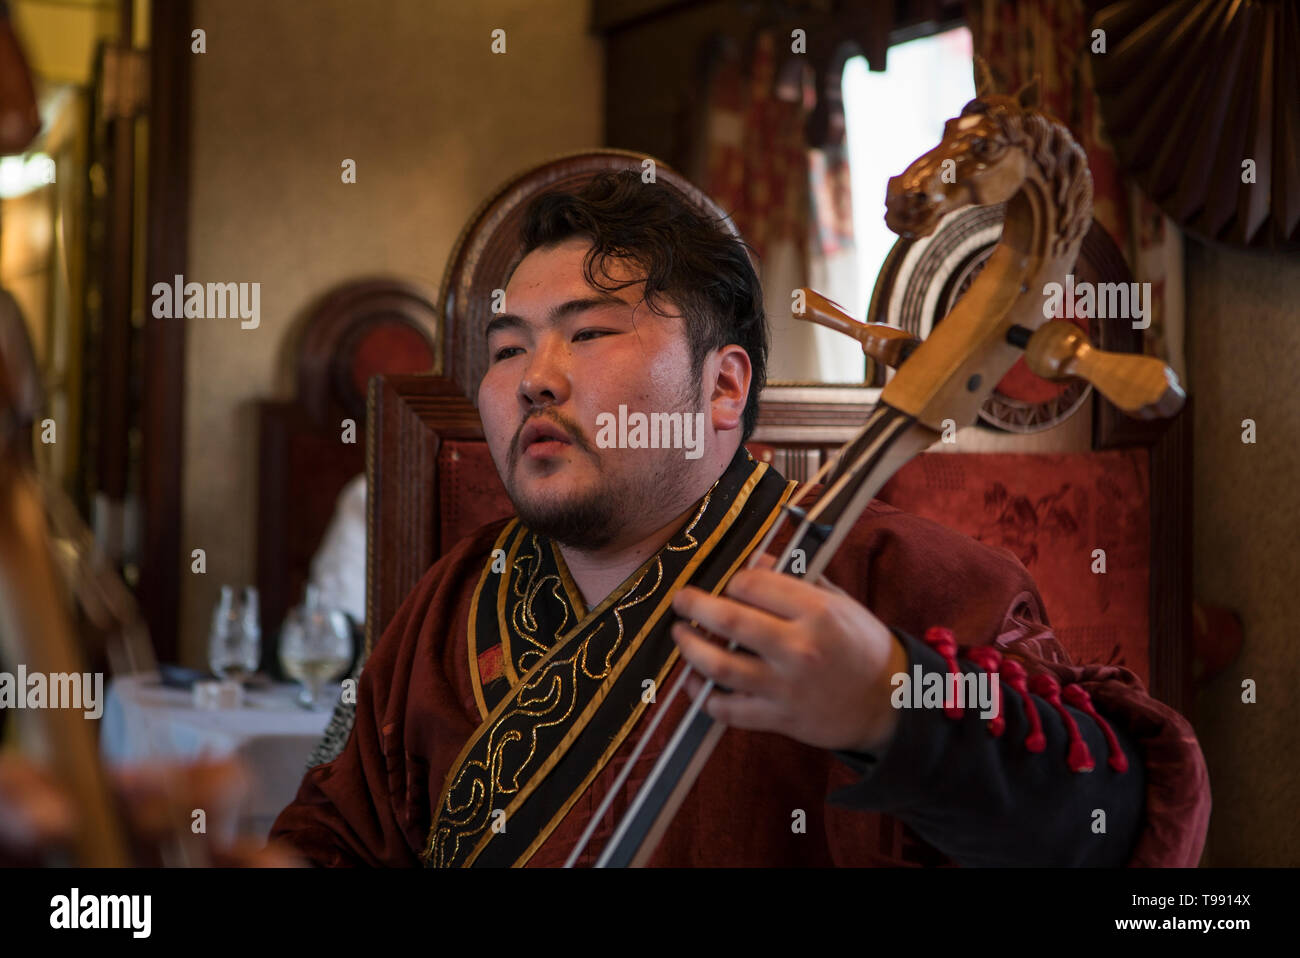 Juega Mongole instrumento en coche comedor, hierro del ferrocarril transiberiano Foto de stock